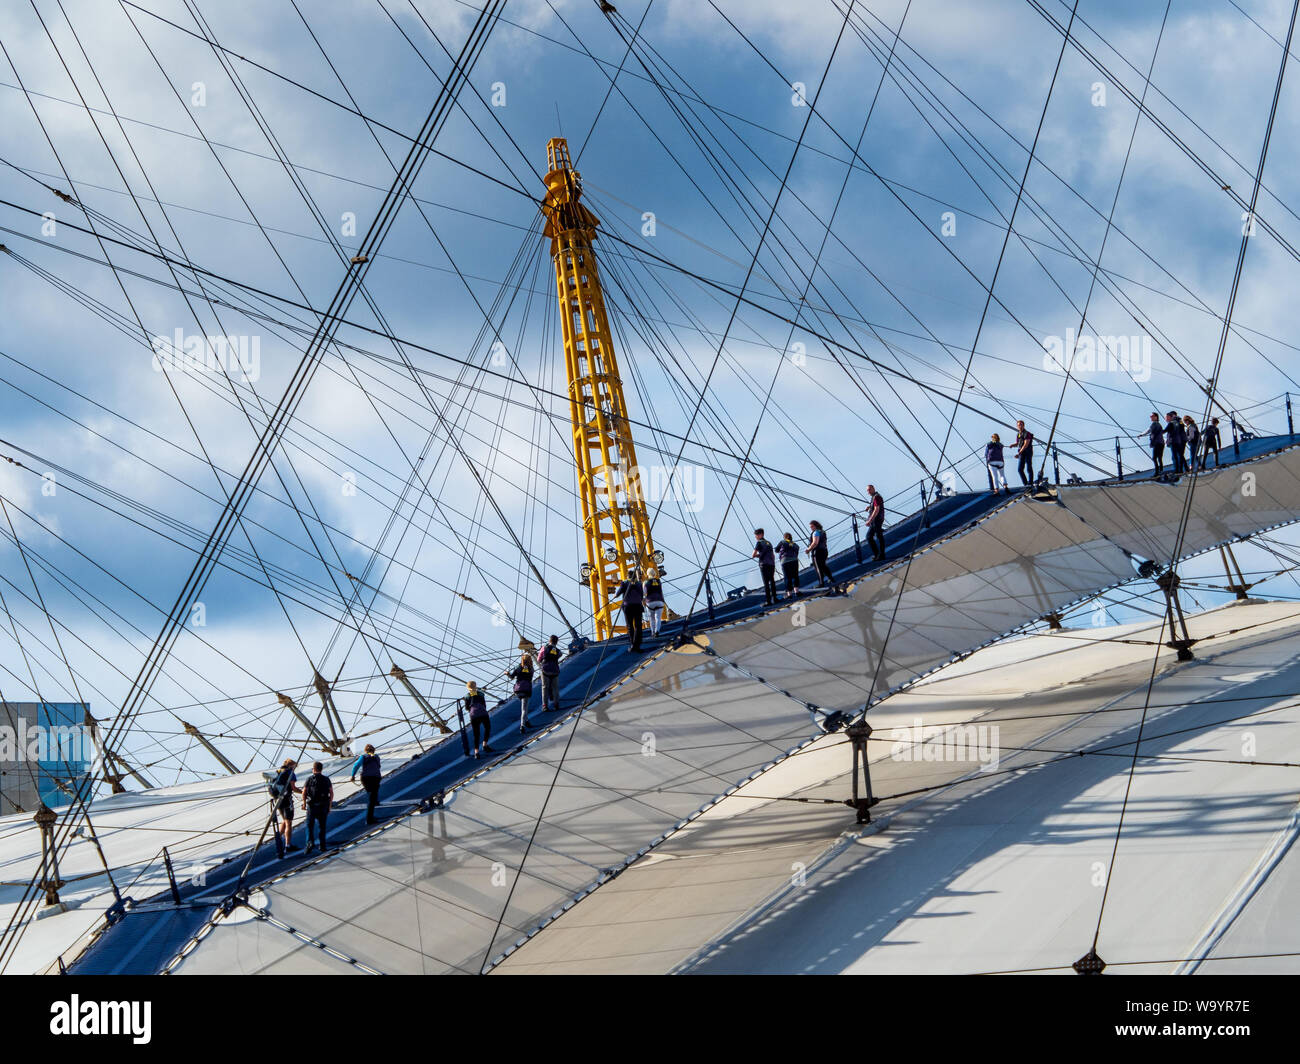 Oben auf dem Gehweg O2-O2 Arena, der einen geführten Aufstieg über das Dach der Arena mit malerischem Blick auf die Wahrzeichen Londons ermöglicht. Millennium Dome Gehweg. O2-Dome-Aufstieg. Stockfoto